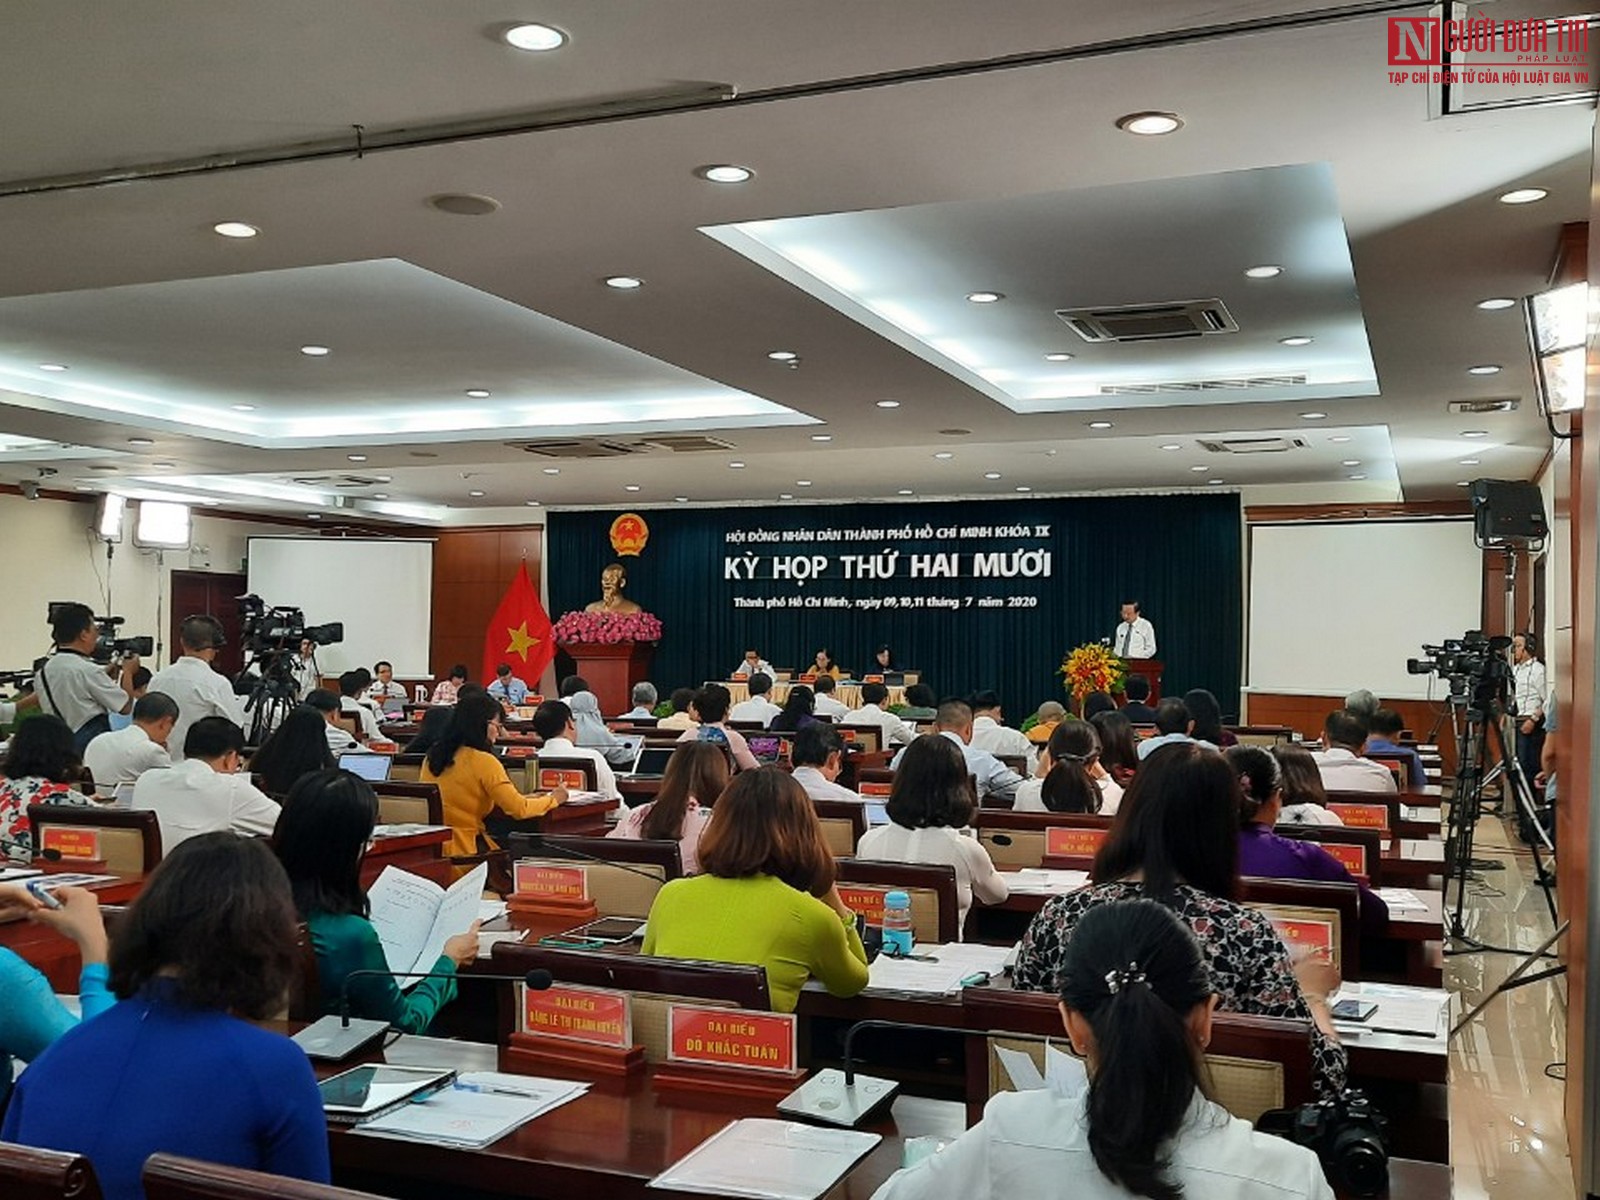 Tin nhanh - Khai mạc kỳ họp HĐND TP.HCM để thúc đẩy kinh tế 'bình thường mới'